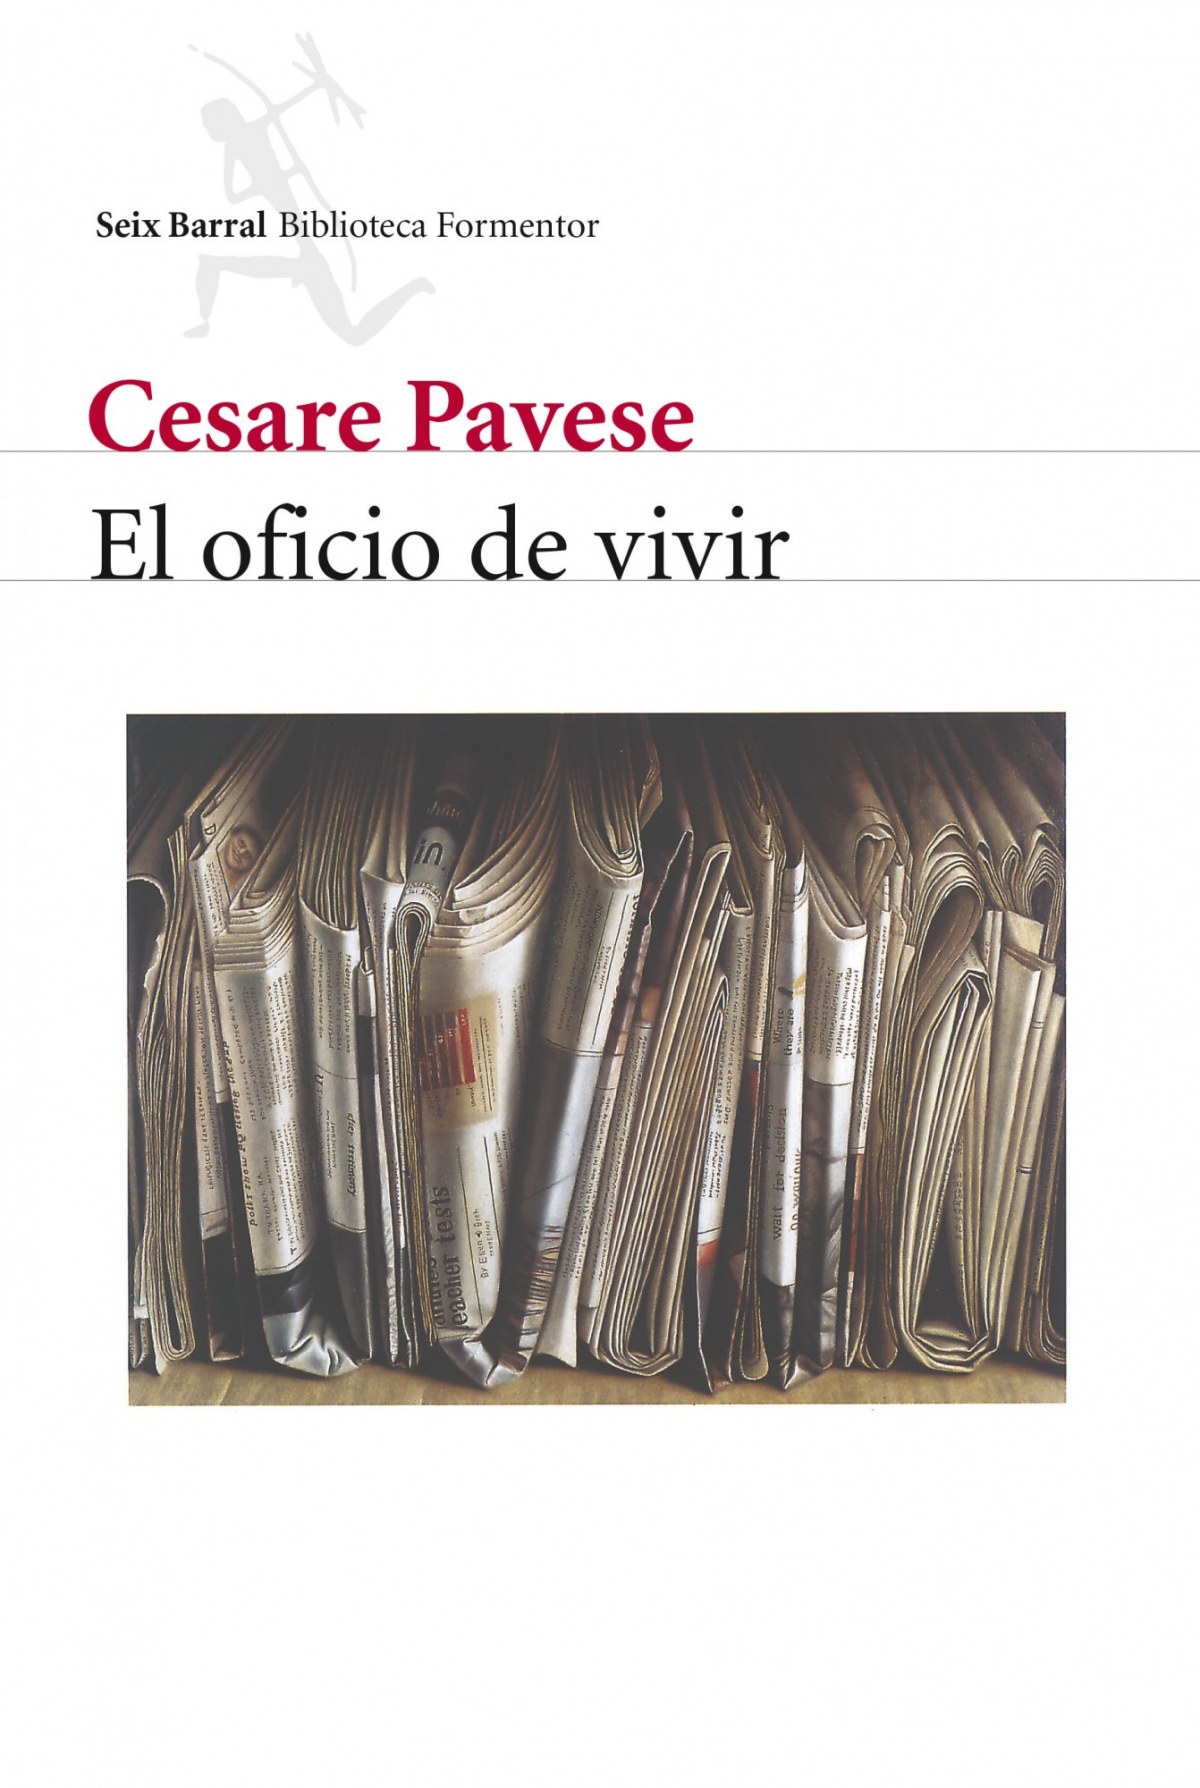 El oficio de vivir - Cesare Pavese